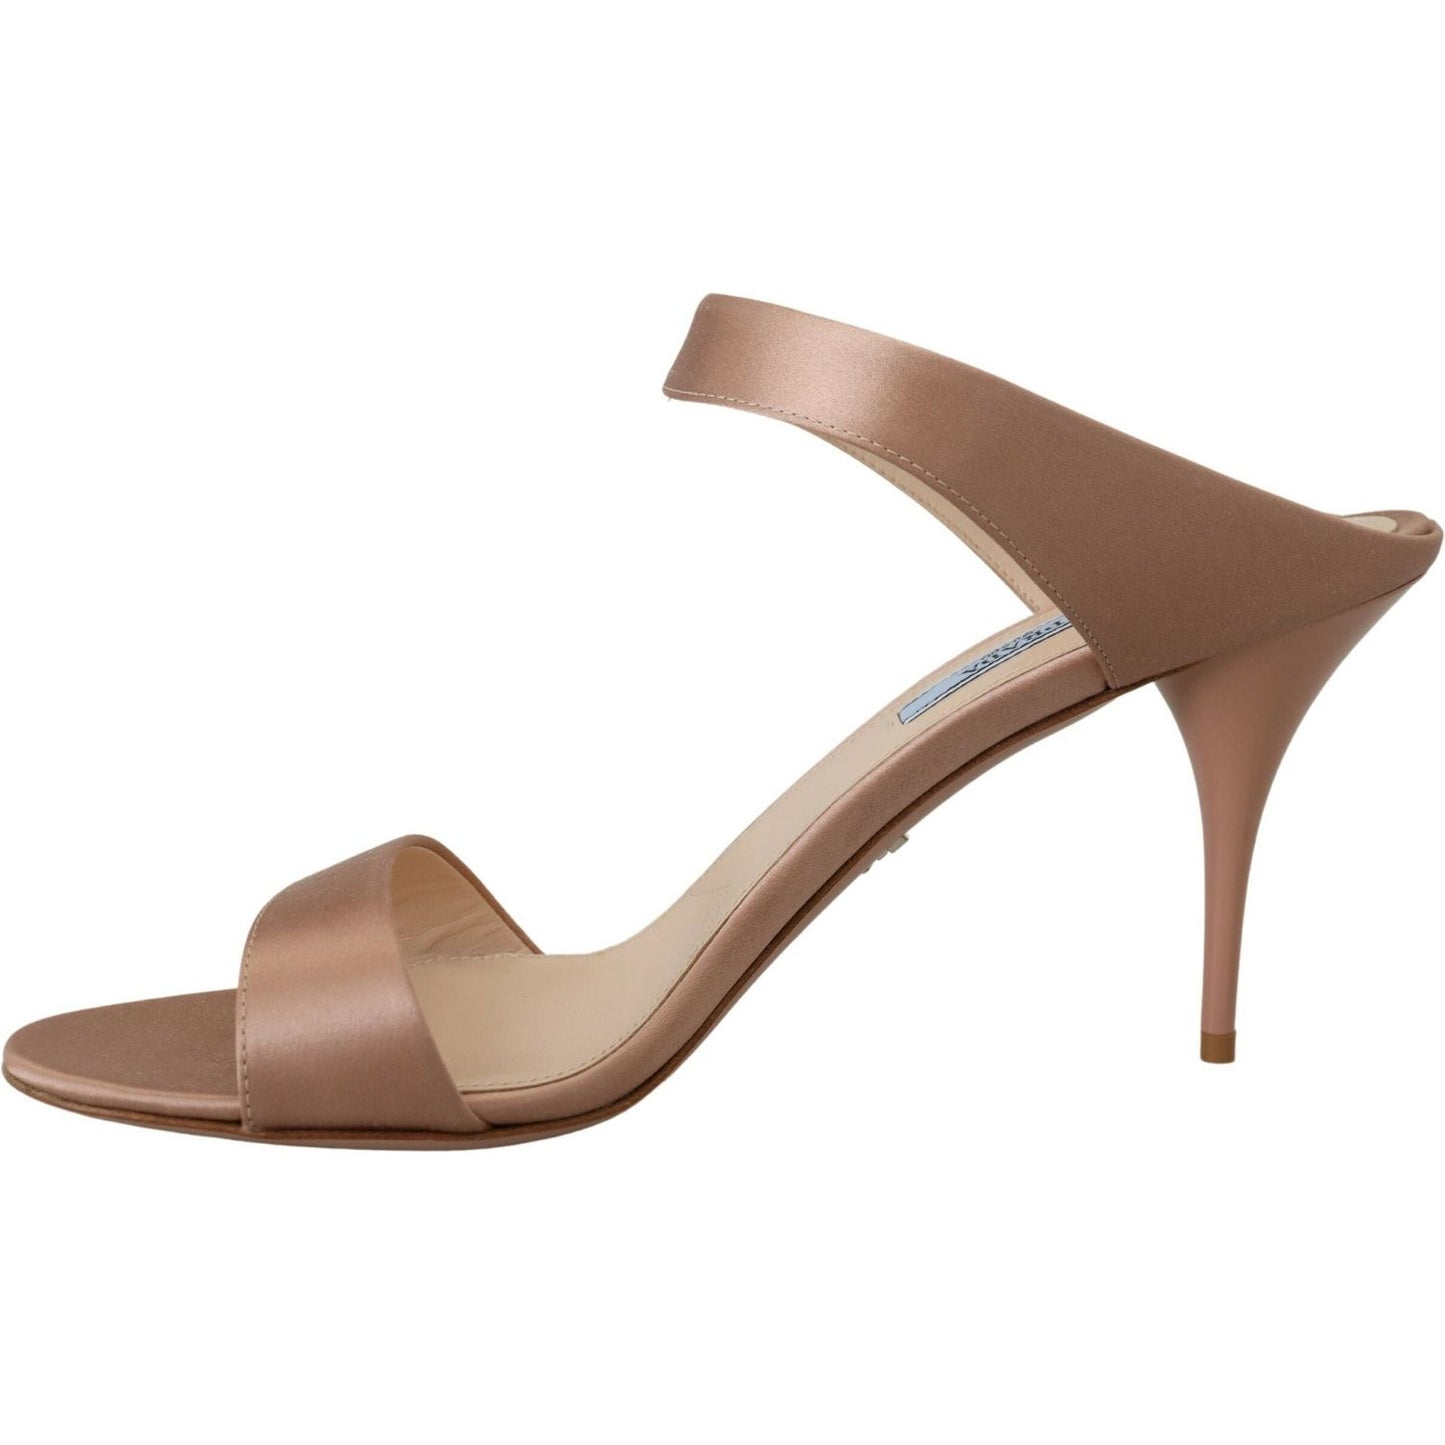 Prada | Glimmering Rose Gold Leather Heels| McRichard Designer Brands   